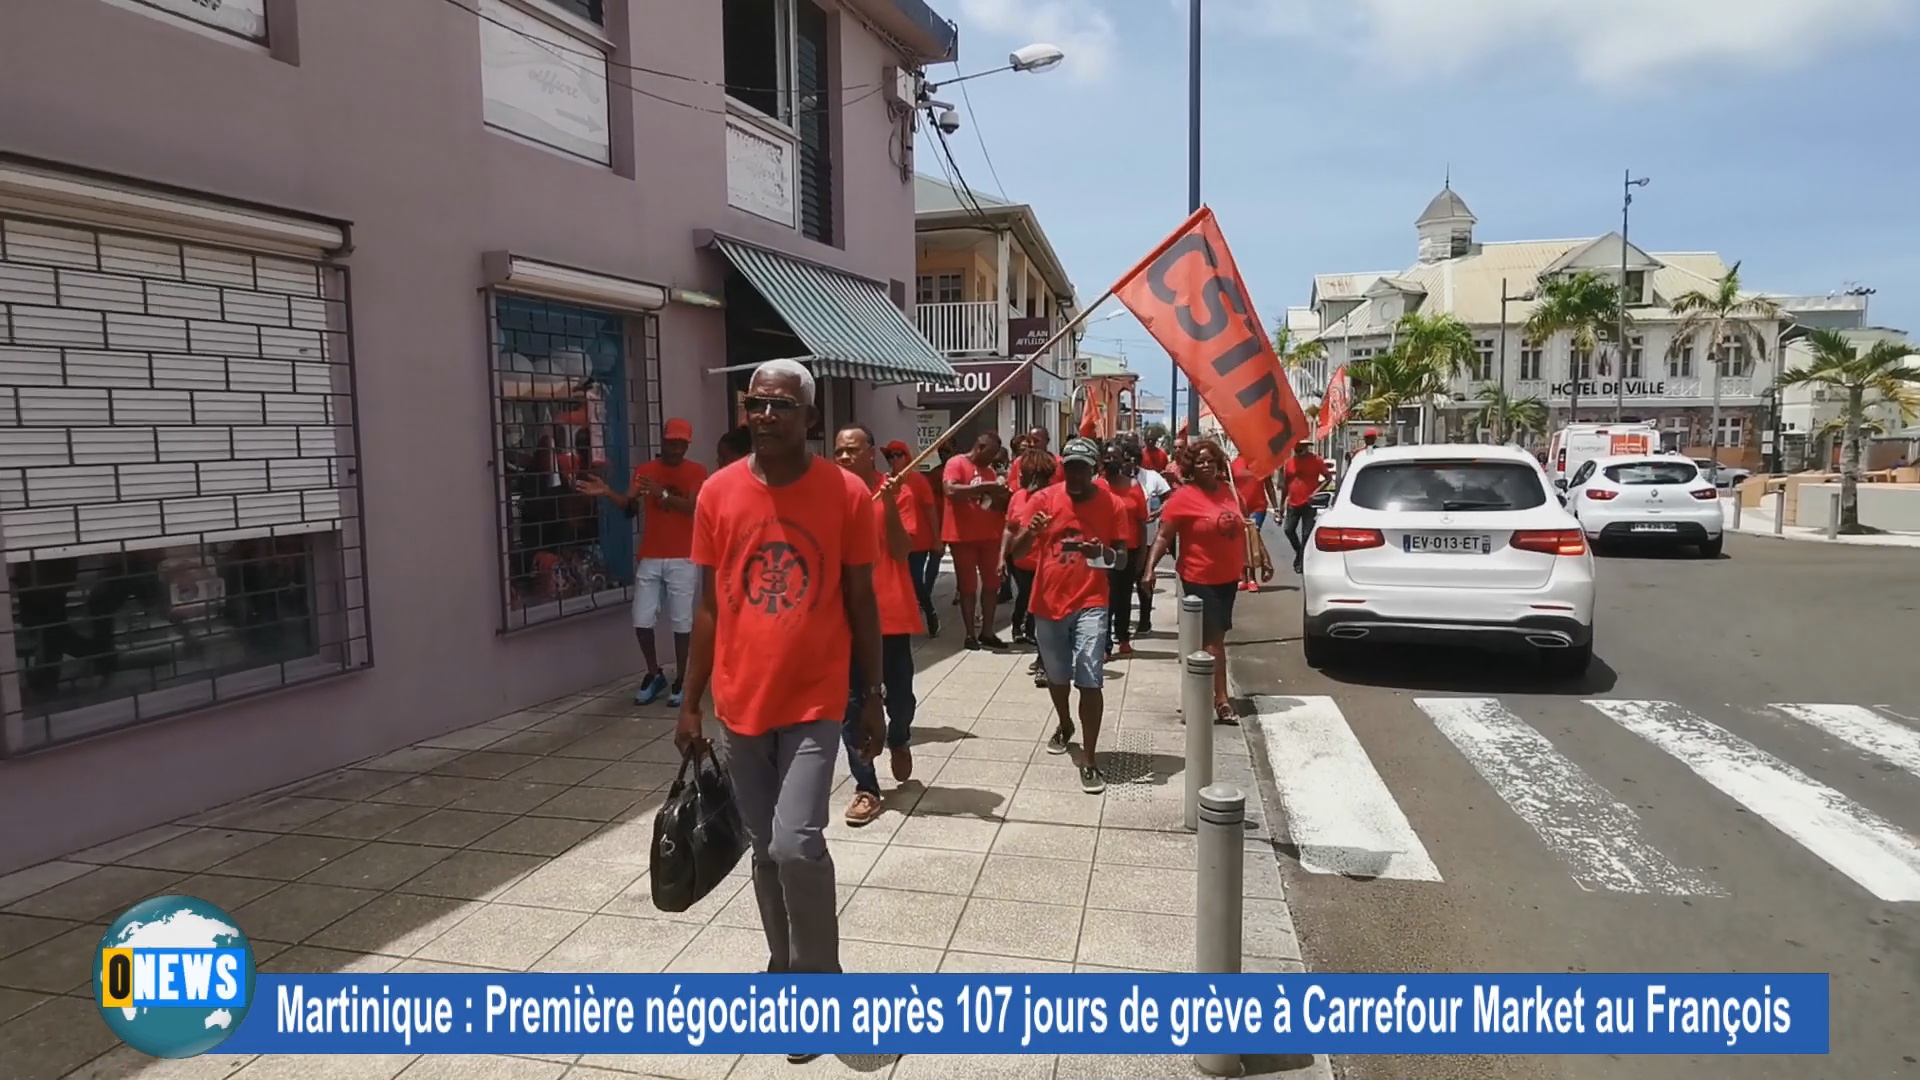 Martinique 1ère négociation à Carrefour Market au François après 107 jours de grève